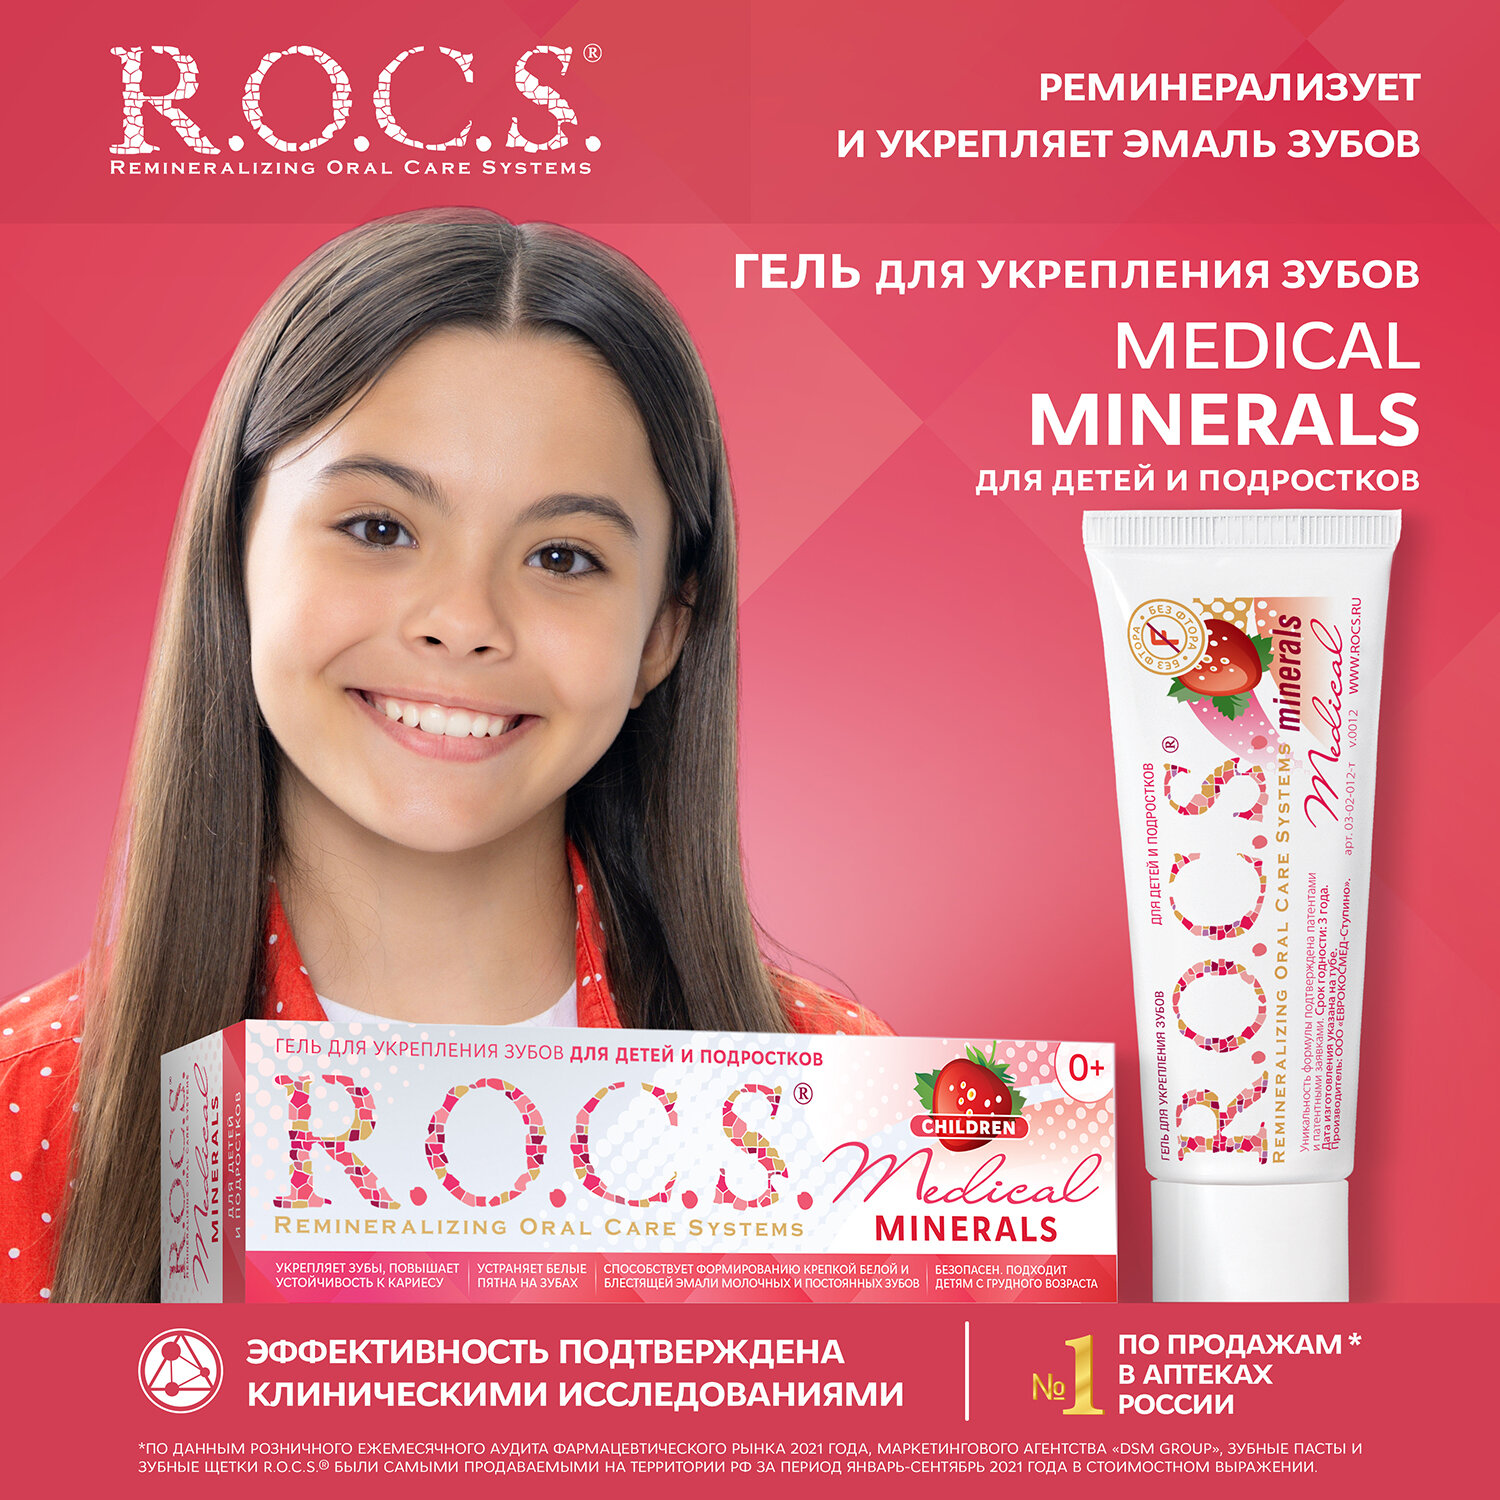 Гель для реминерализации R.O.C.S. Medical Minerals со вкусом клубники 0+